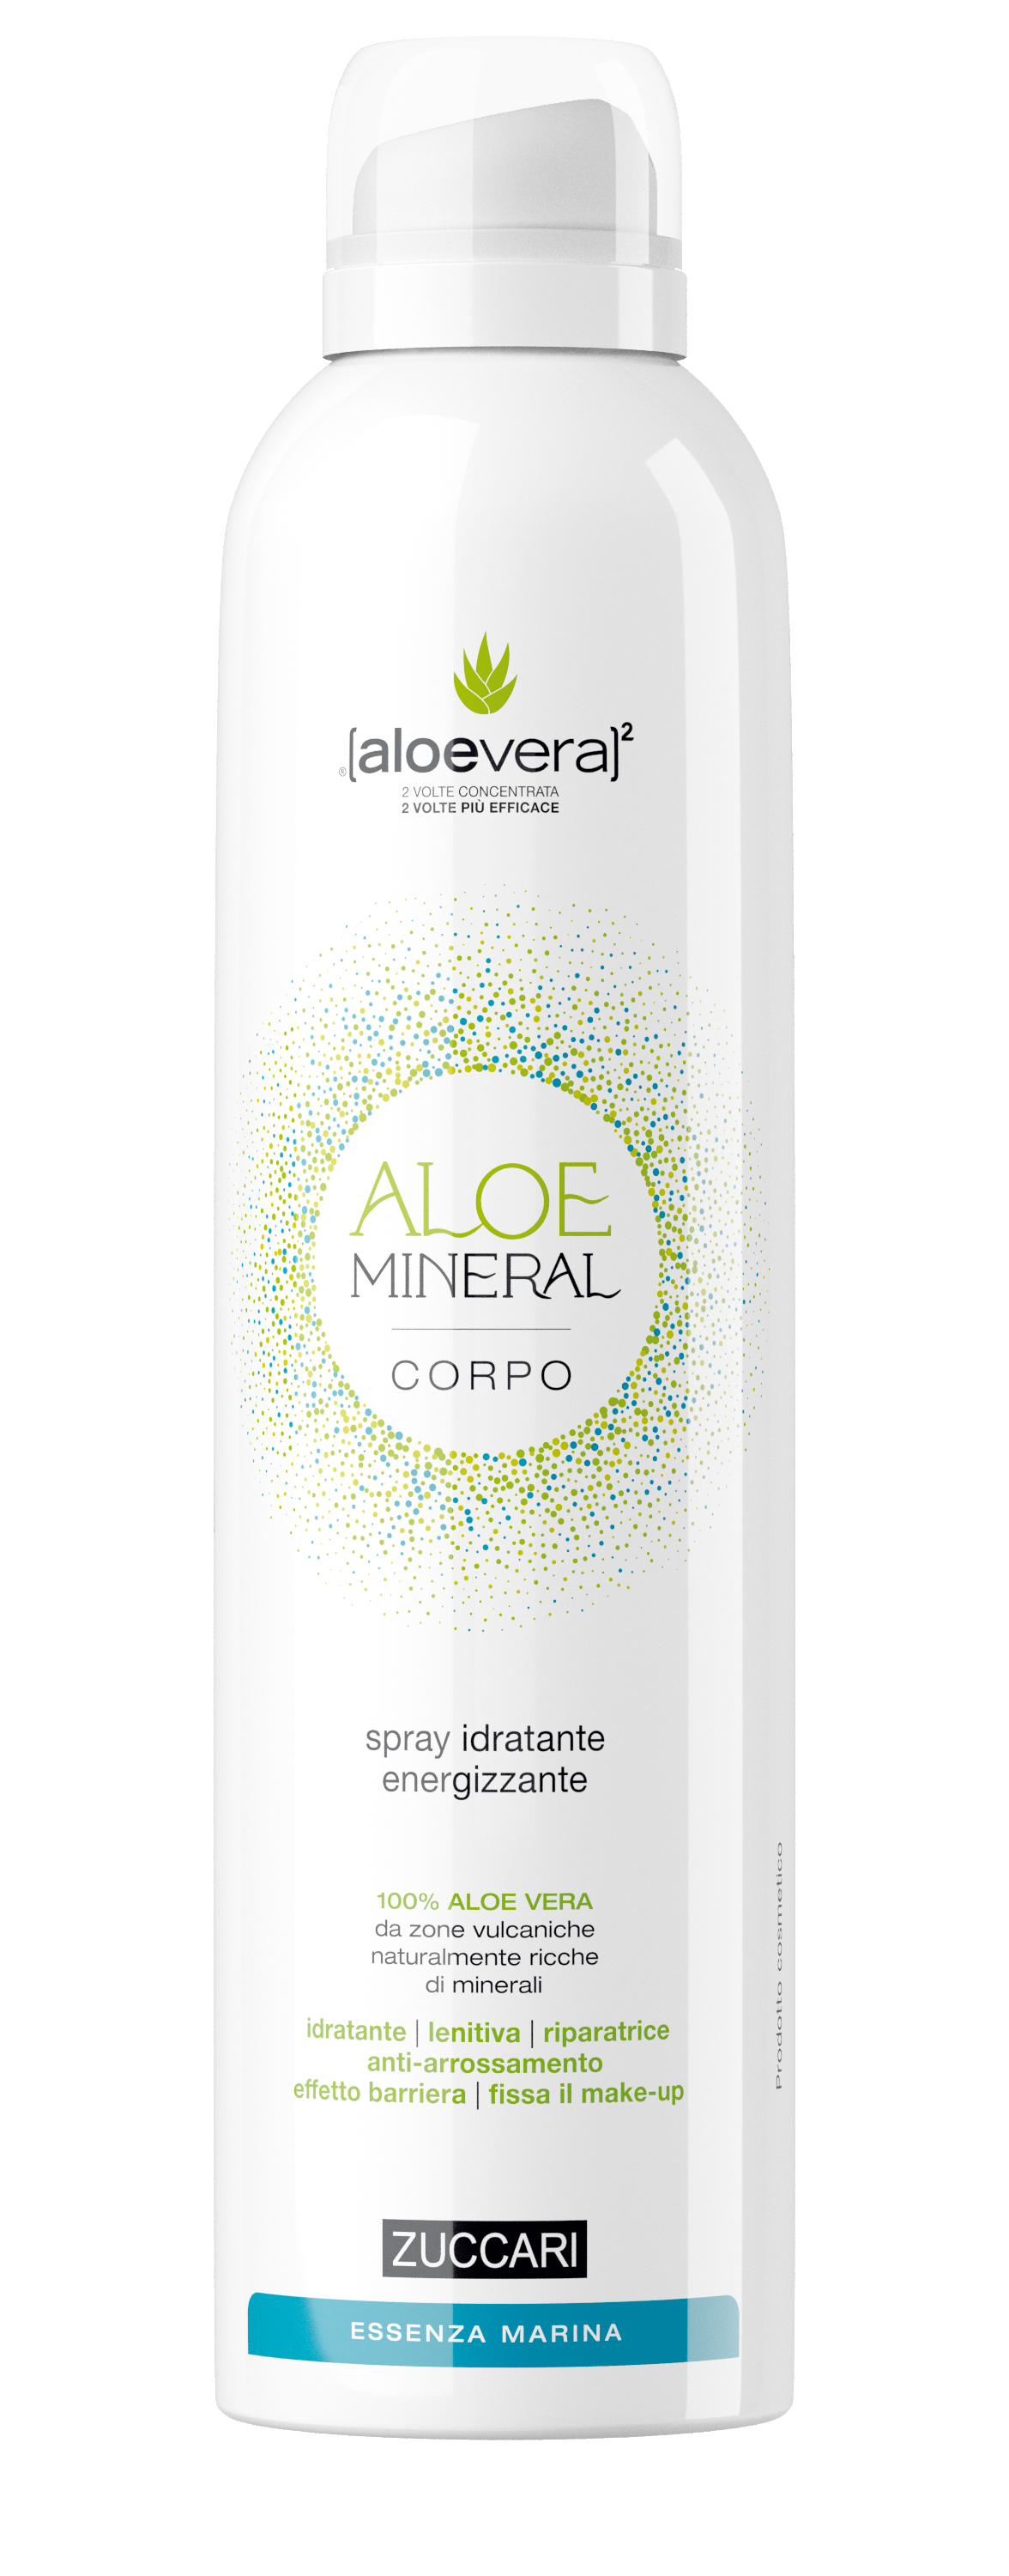 Aloe Mineral Corpo - Essenza Marina ZUCCARI 150ml